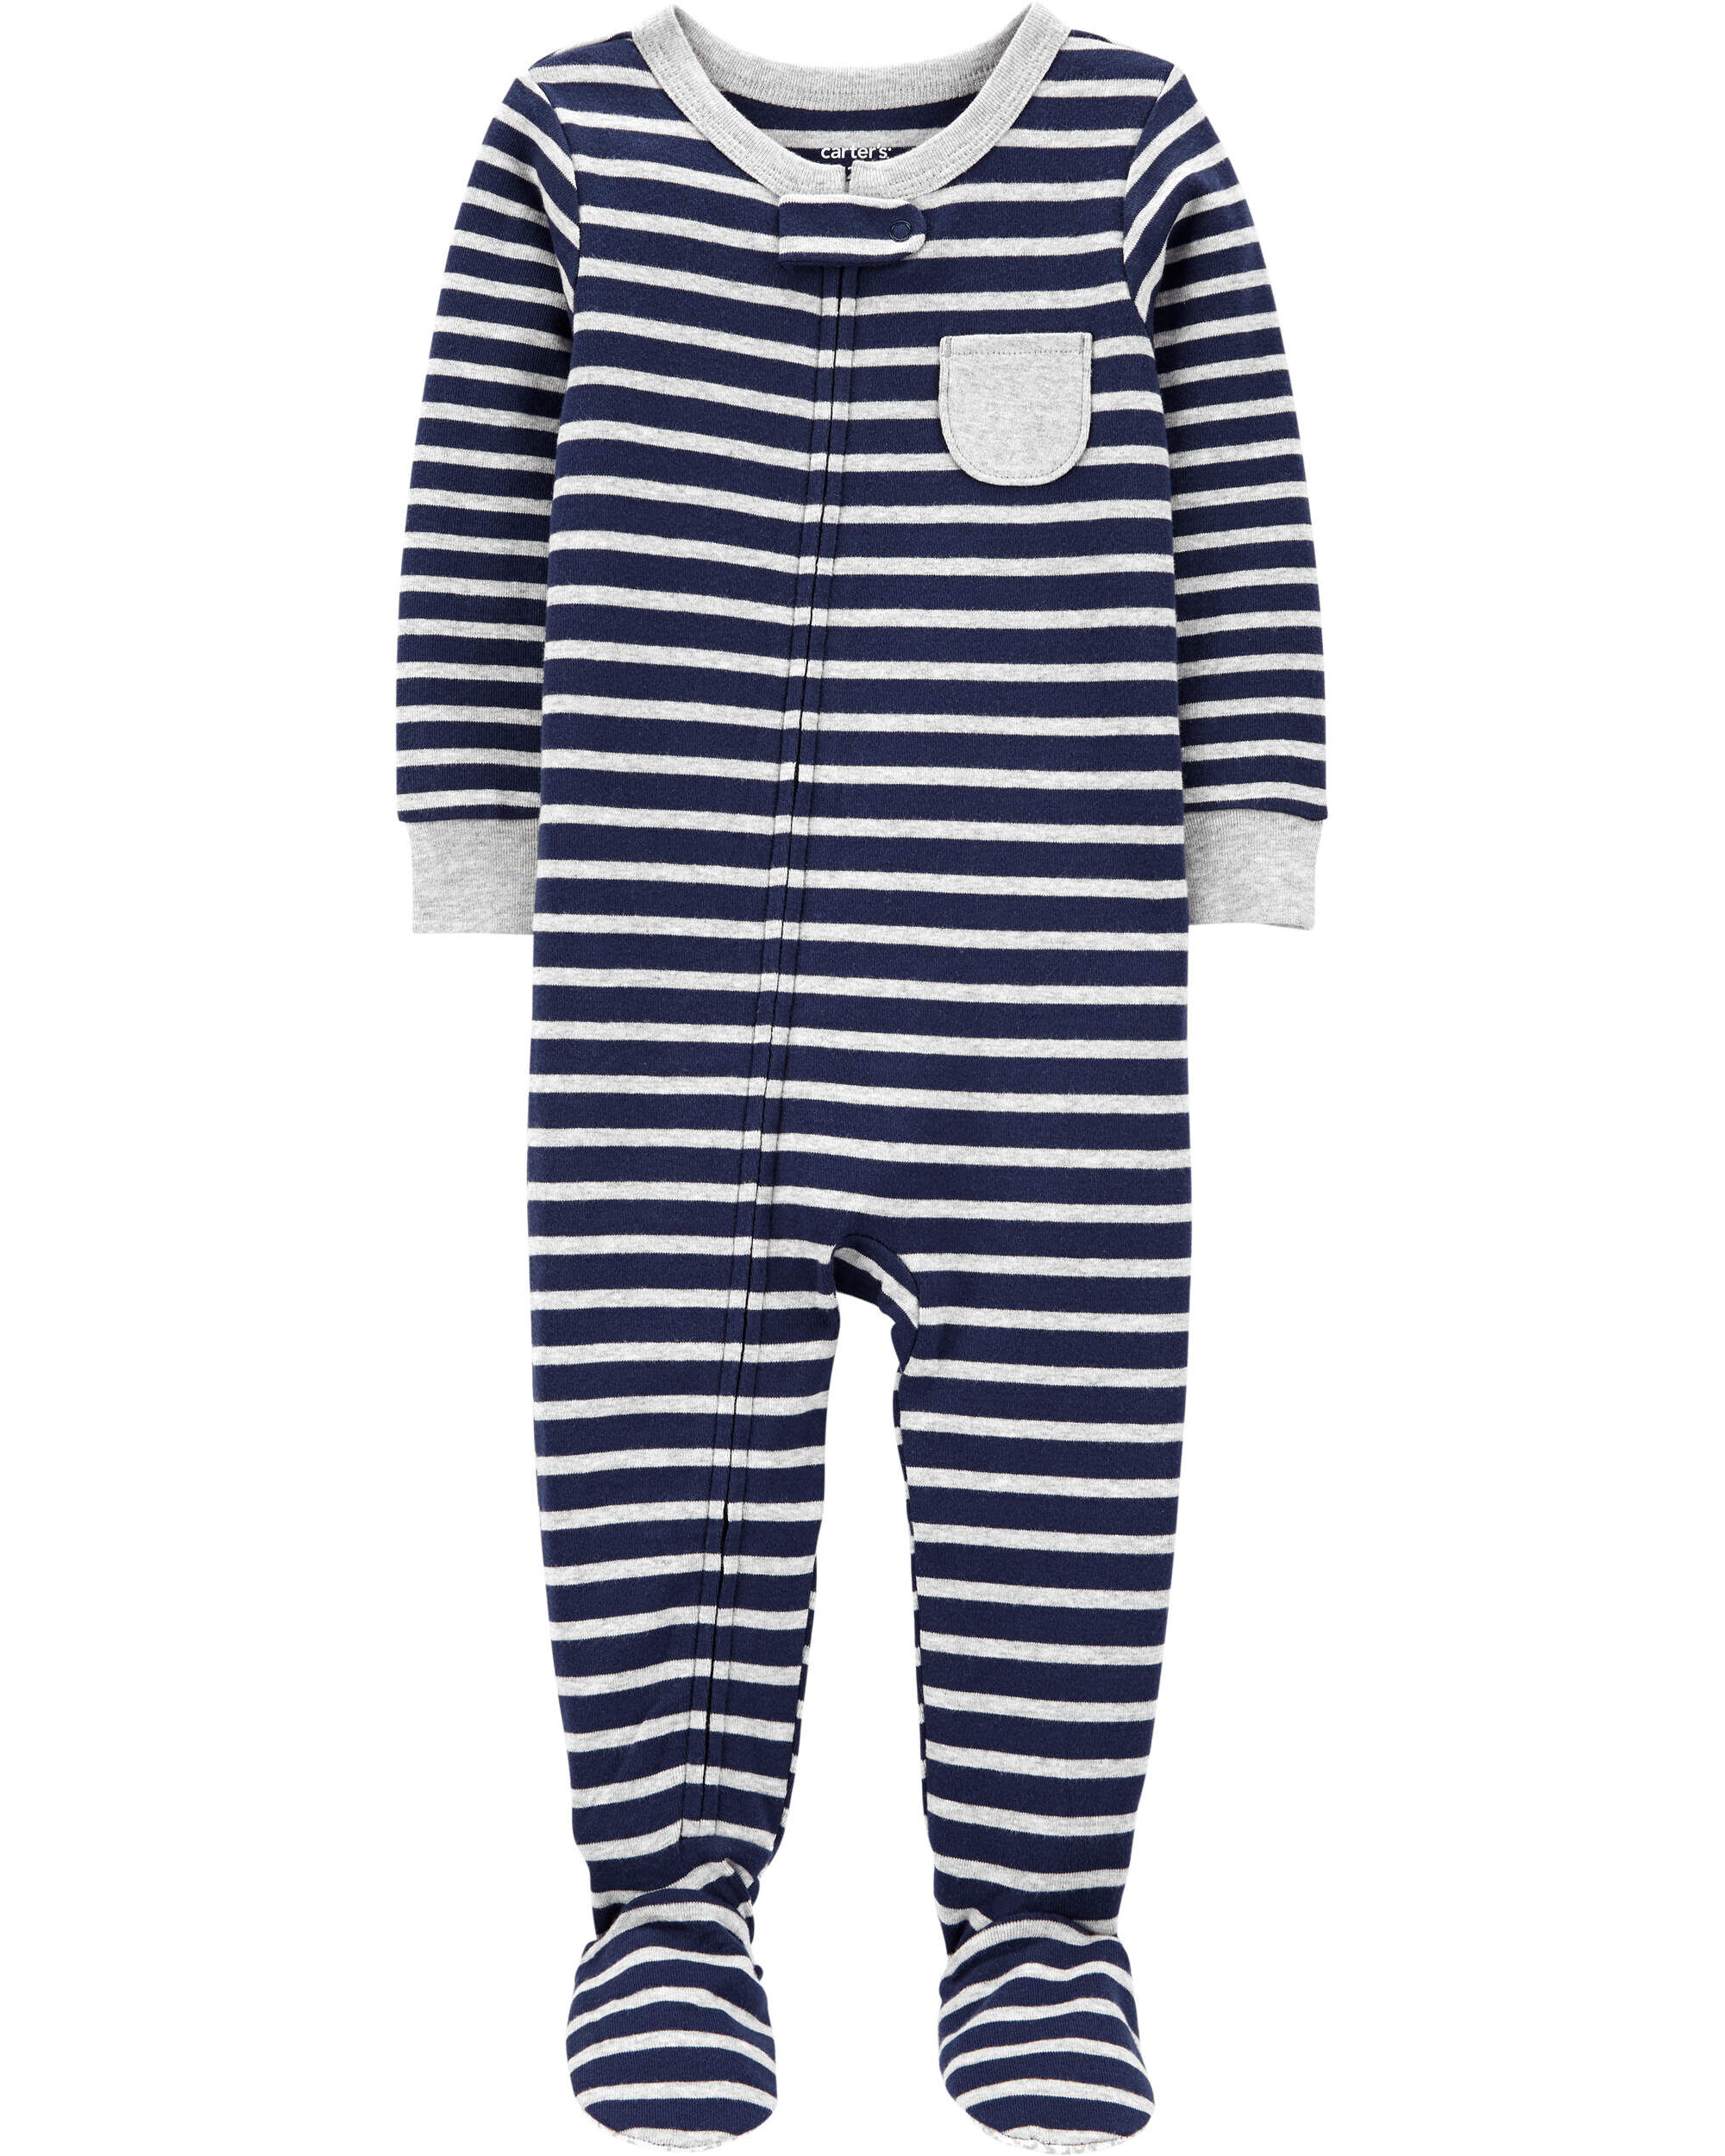 Цельная полосатая пижама из 100 % плотного хлопка для малышей Carter's